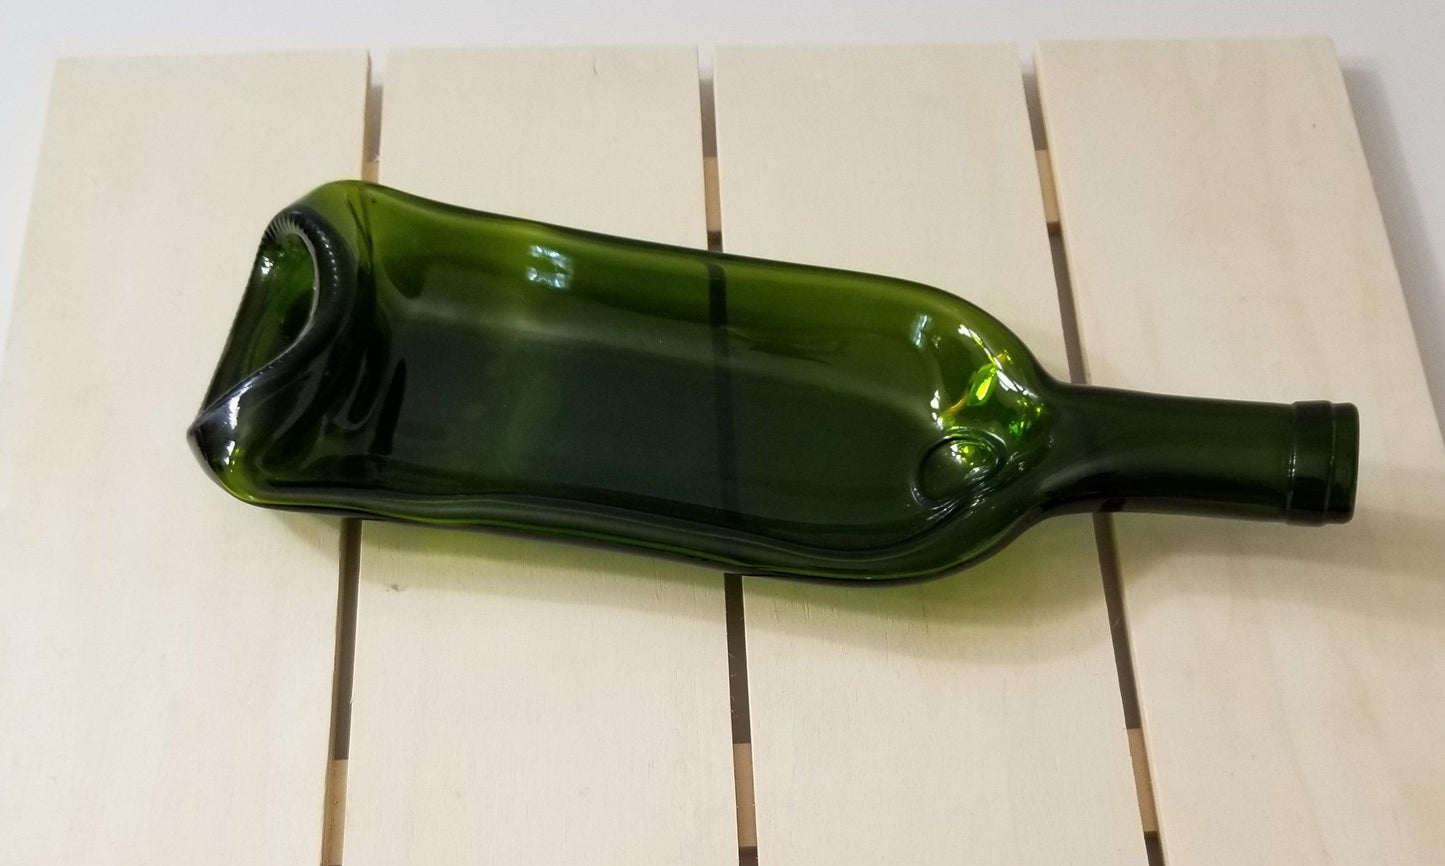 Green Slumped wine bottle bowl shaped